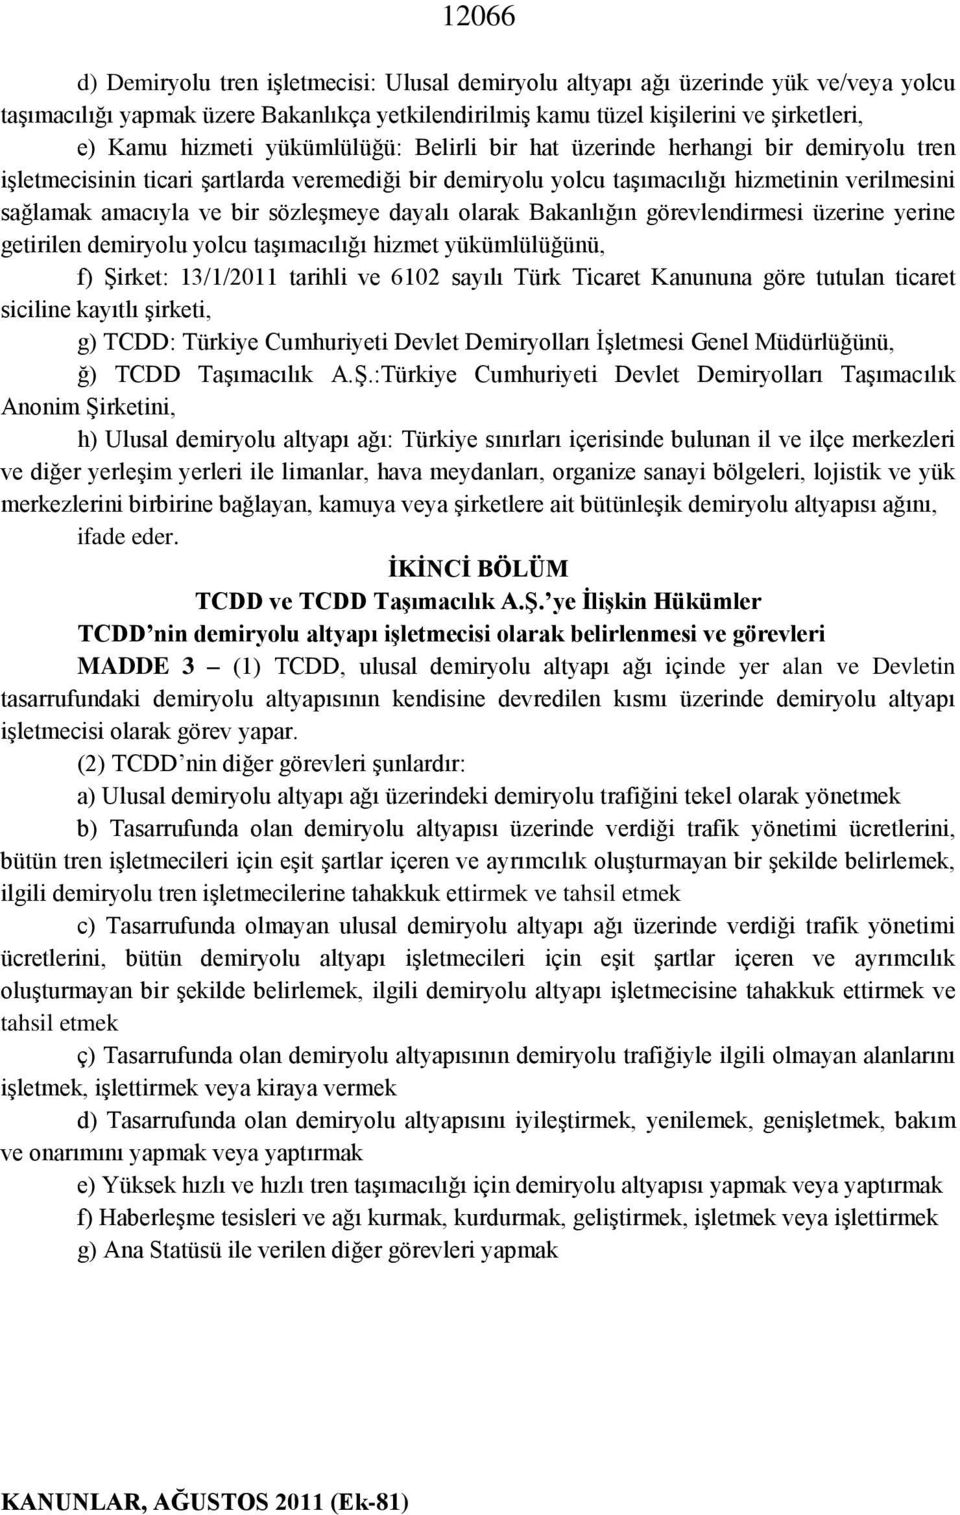 sözleşmeye dayalı olarak Bakanlığın görevlendirmesi üzerine yerine getirilen demiryolu yolcu taşımacılığı hizmet yükümlülüğünü, f) Şirket: 13/1/2011 tarihli ve 6102 sayılı Türk Ticaret Kanununa göre